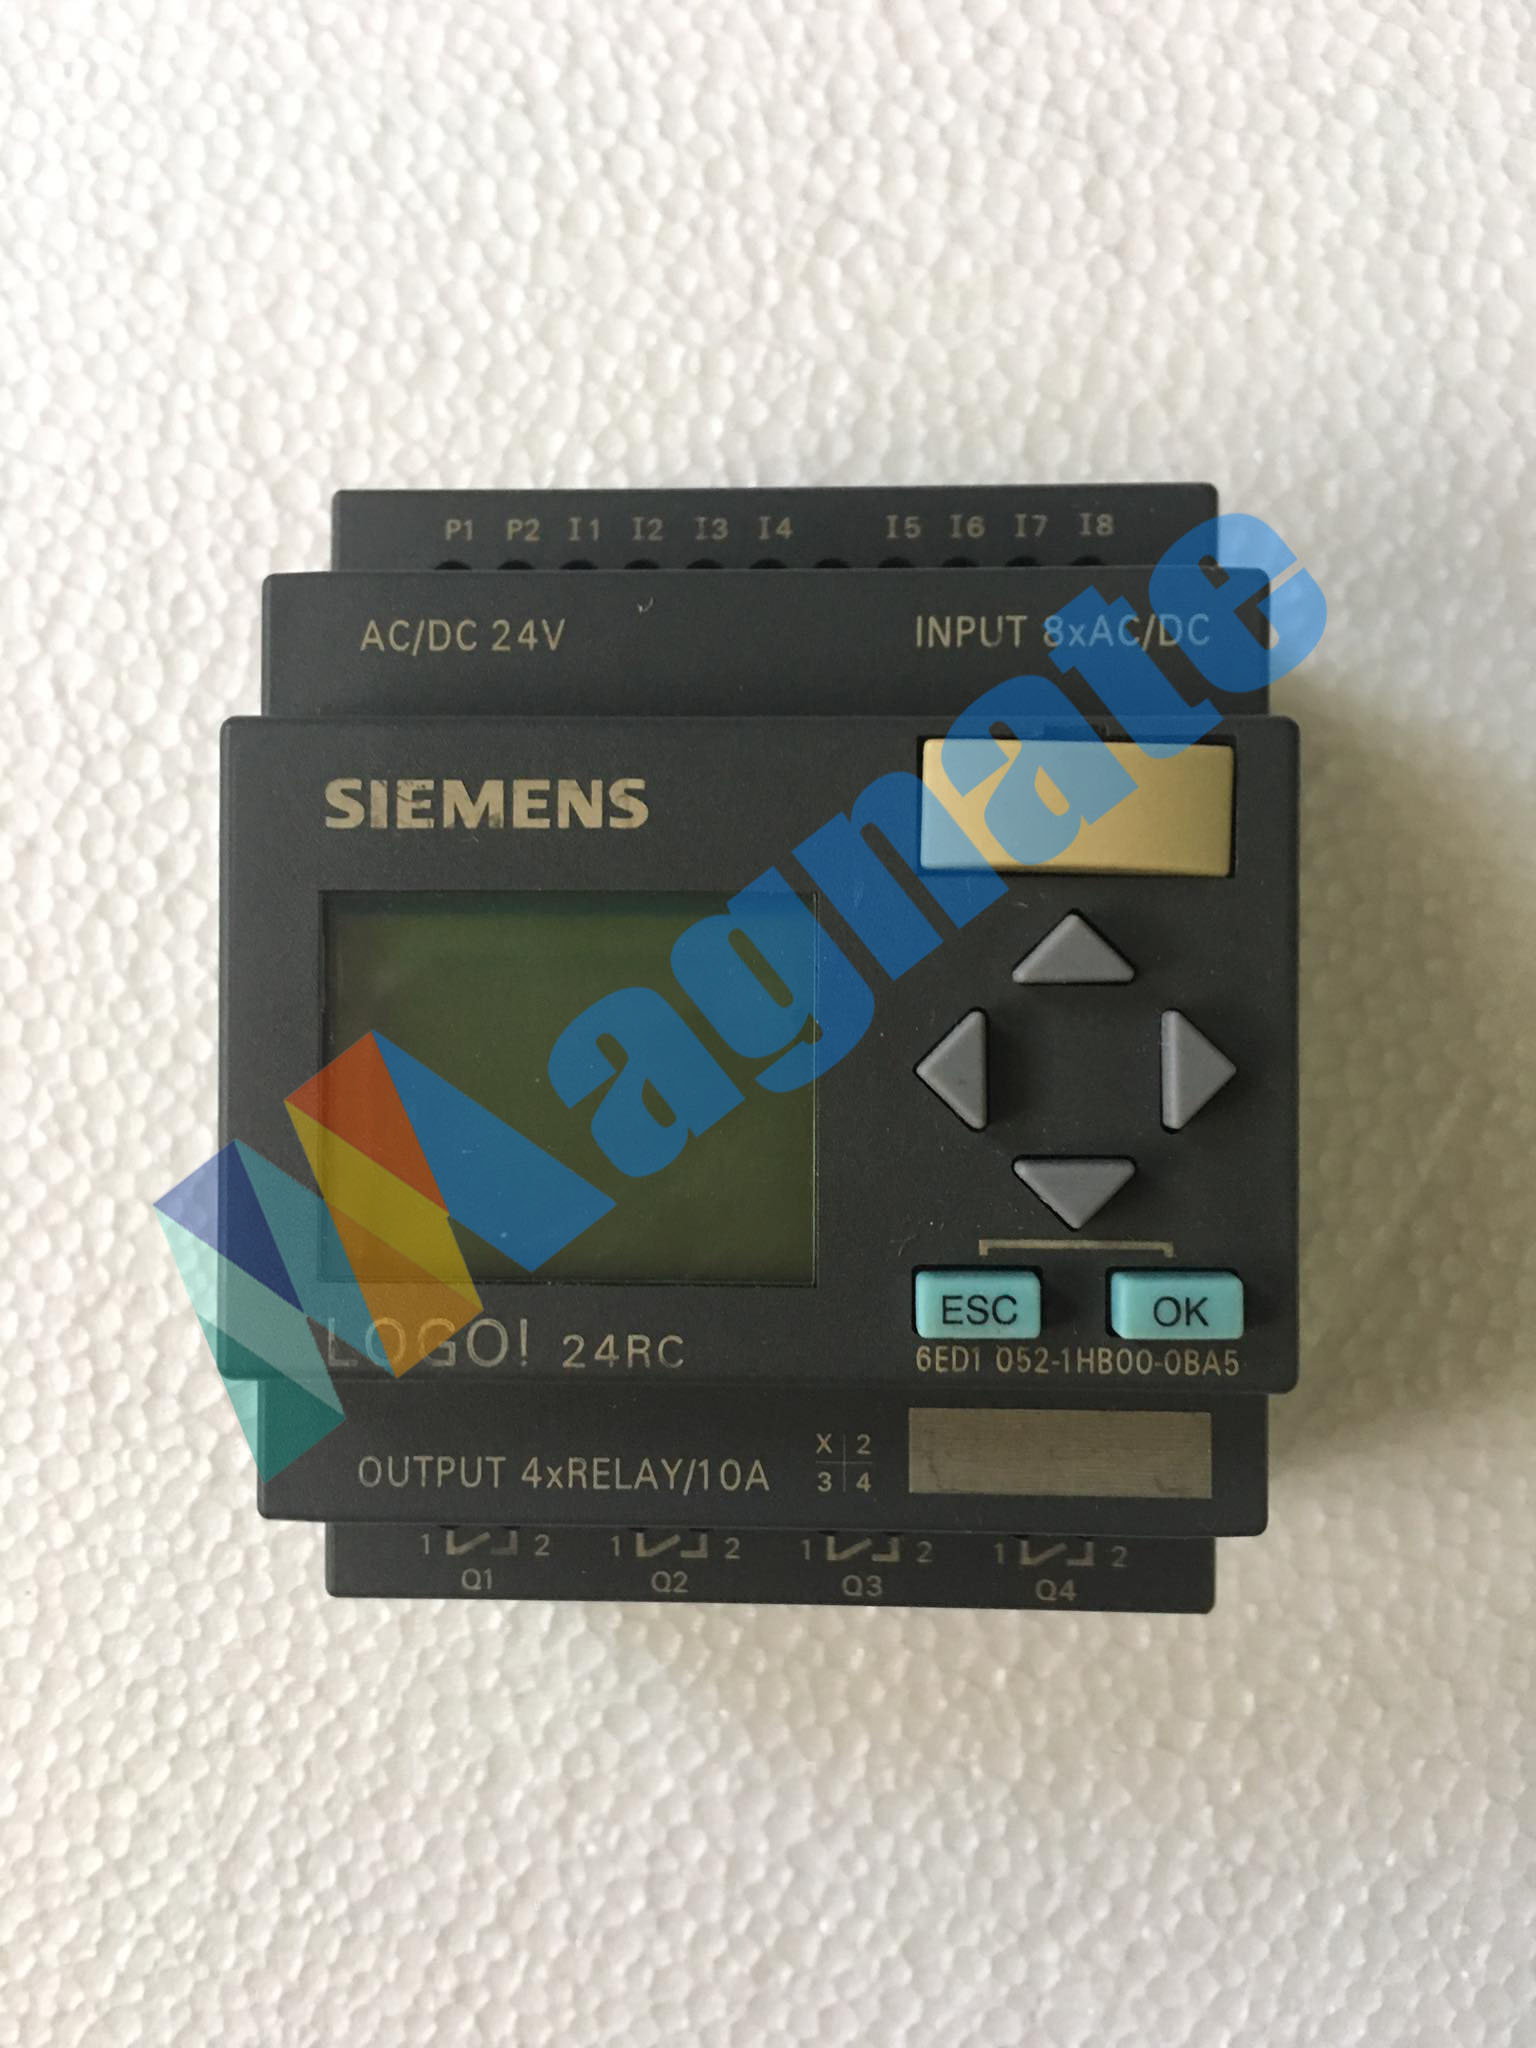 Siemens Circuit Breaker 6ED1-052-1HB00-0BA5